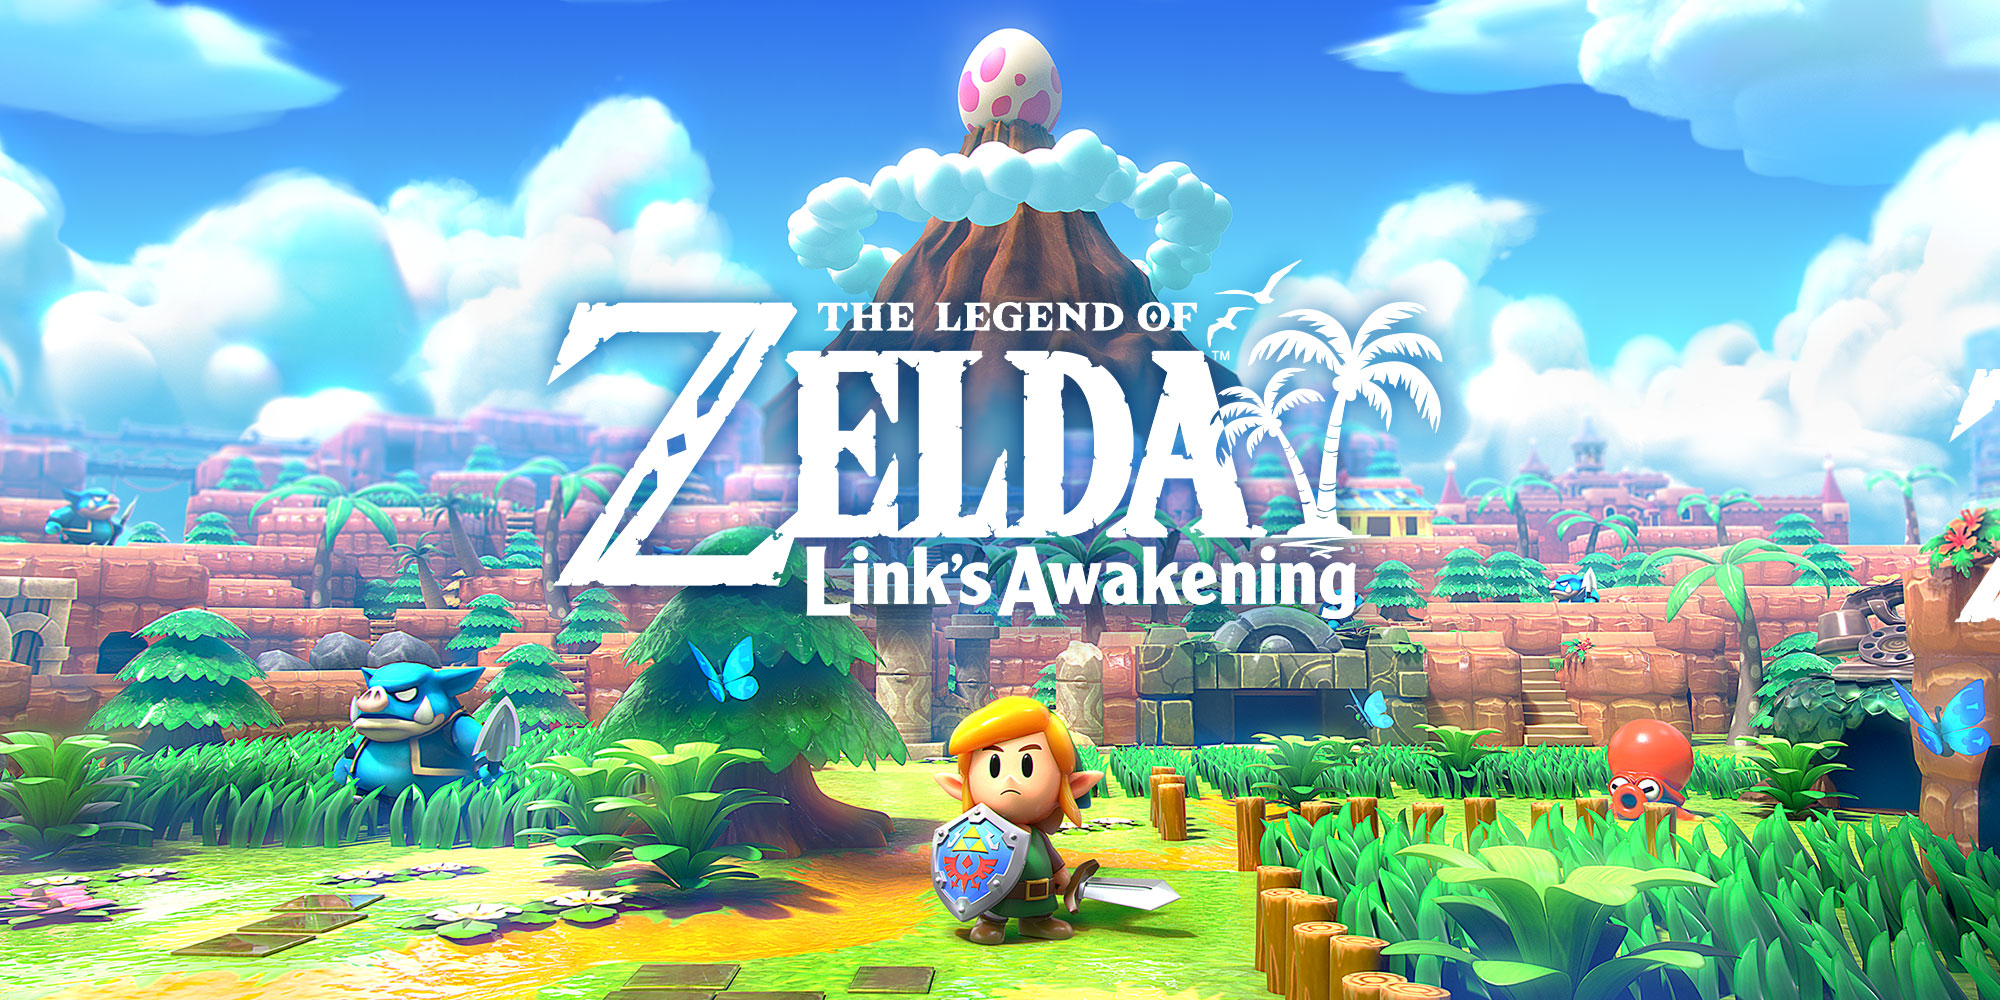 ¡Descubrid más detalles sobre The Legend of Zelda: Link's Awakening de la mano de Eiji Aonuma, el productor de la serie!